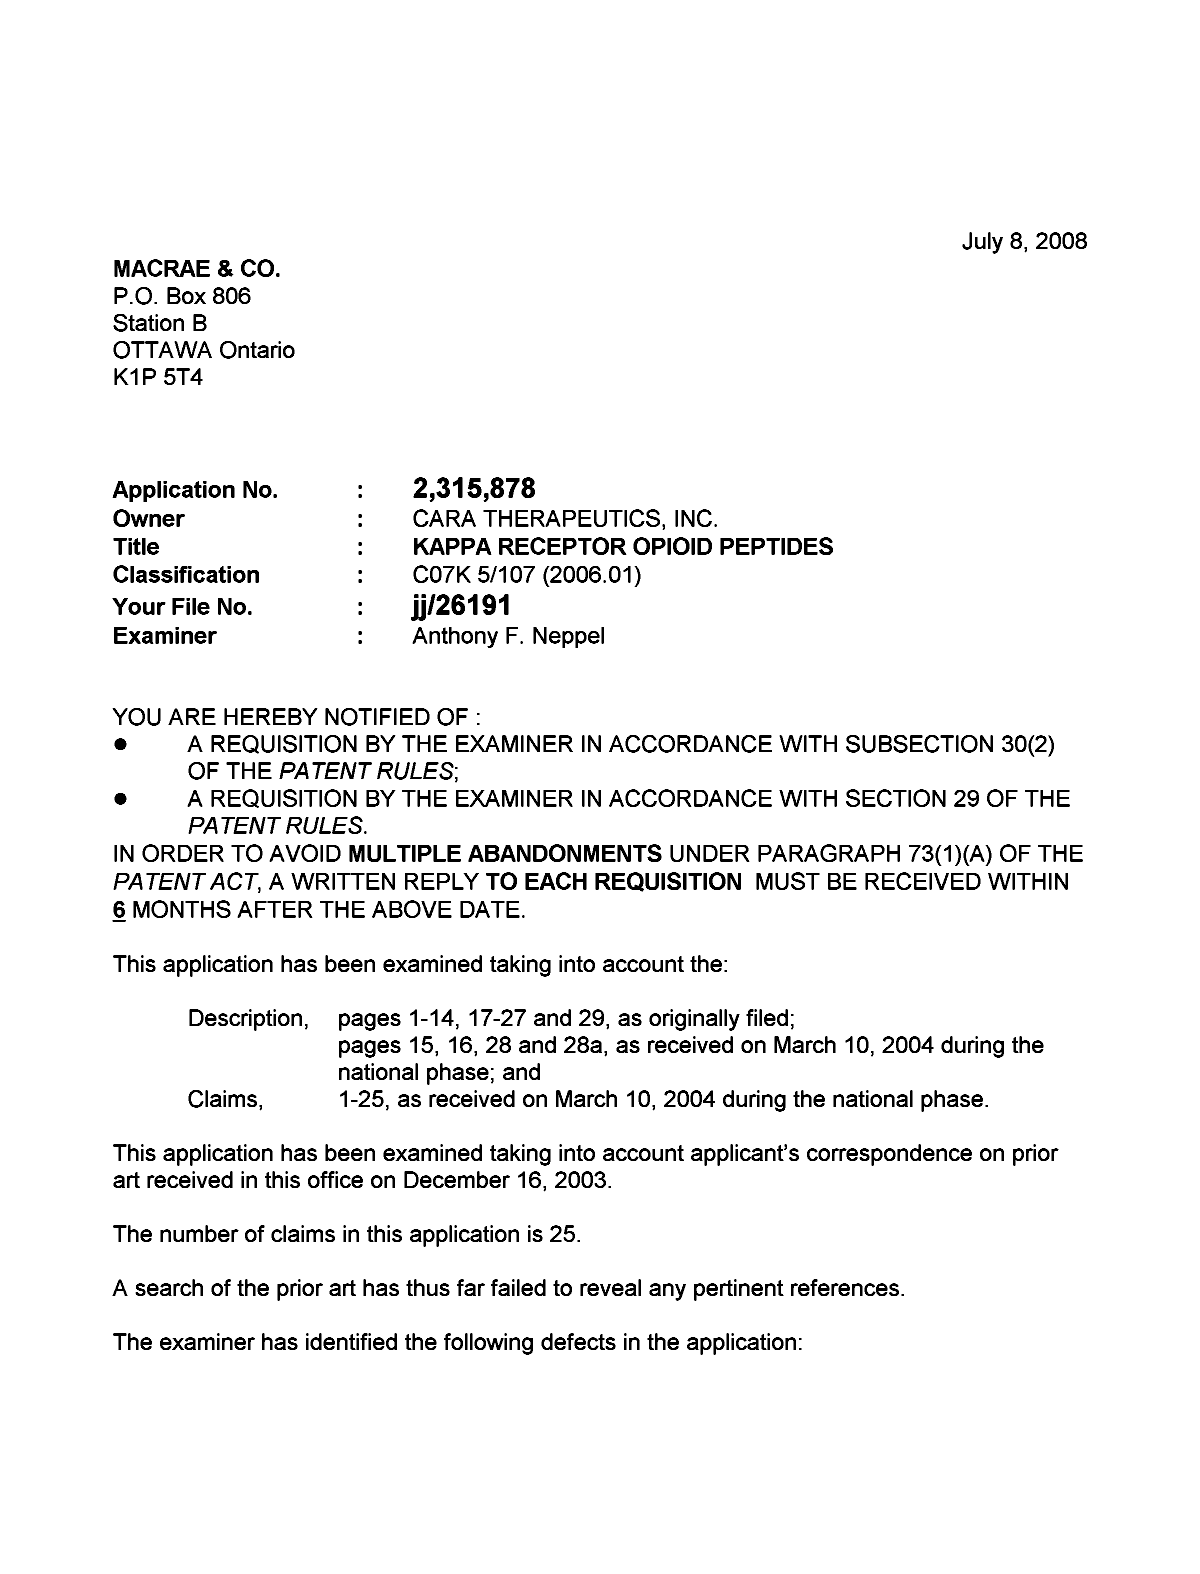 Document de brevet canadien 2315878. Poursuite-Amendment 20080708. Image 1 de 2